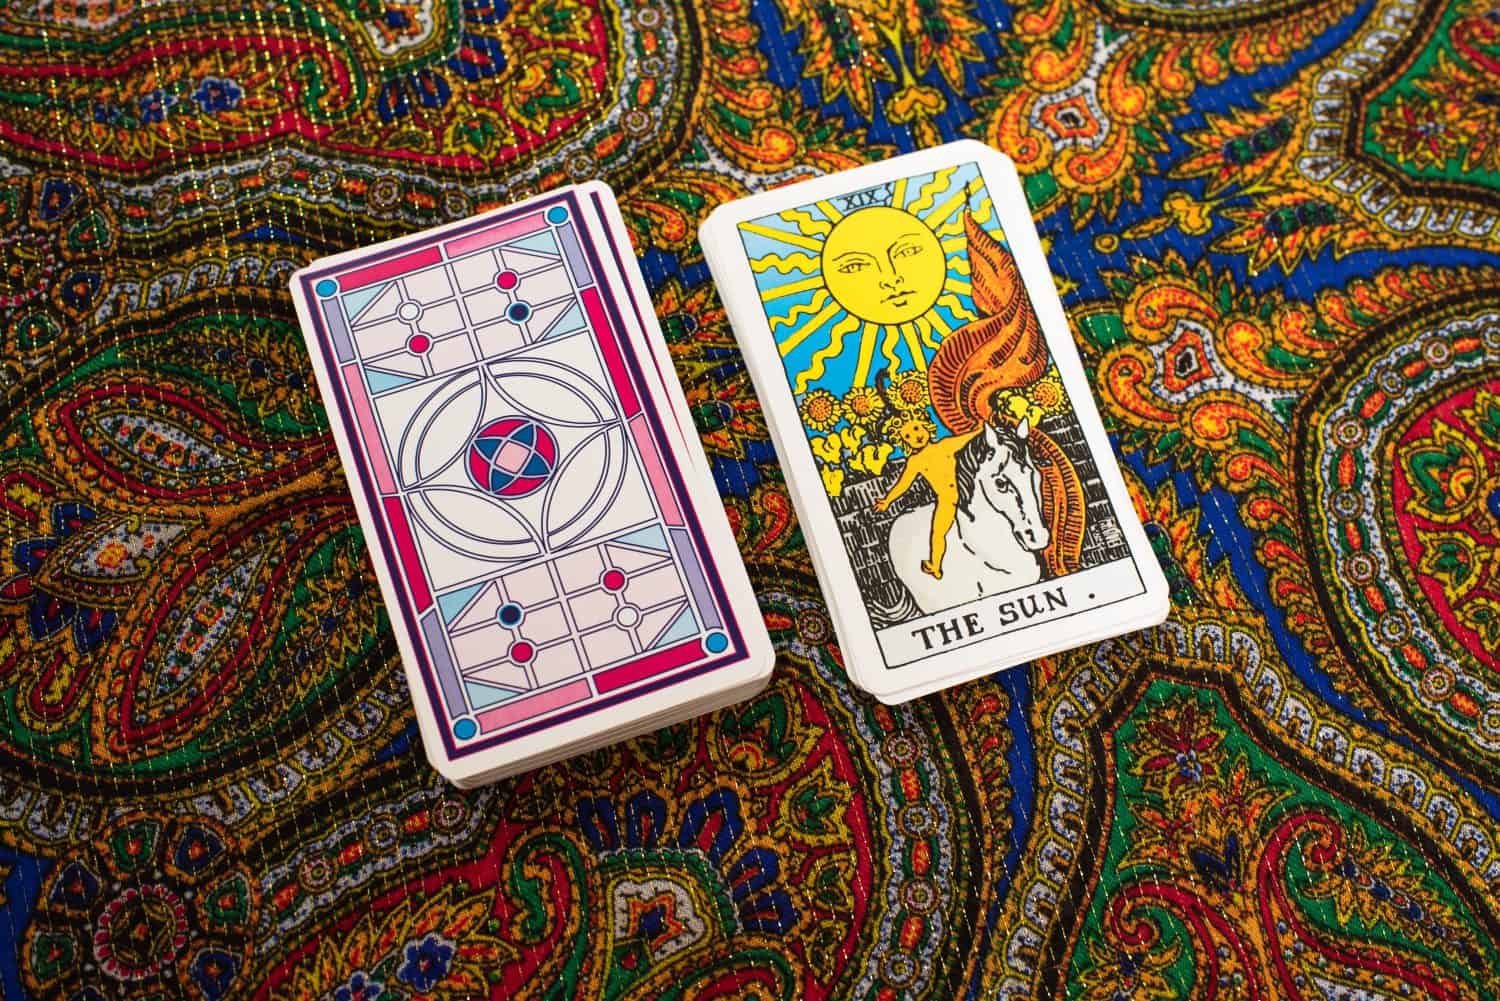 Tarot cards. Magic. Divination. The sun